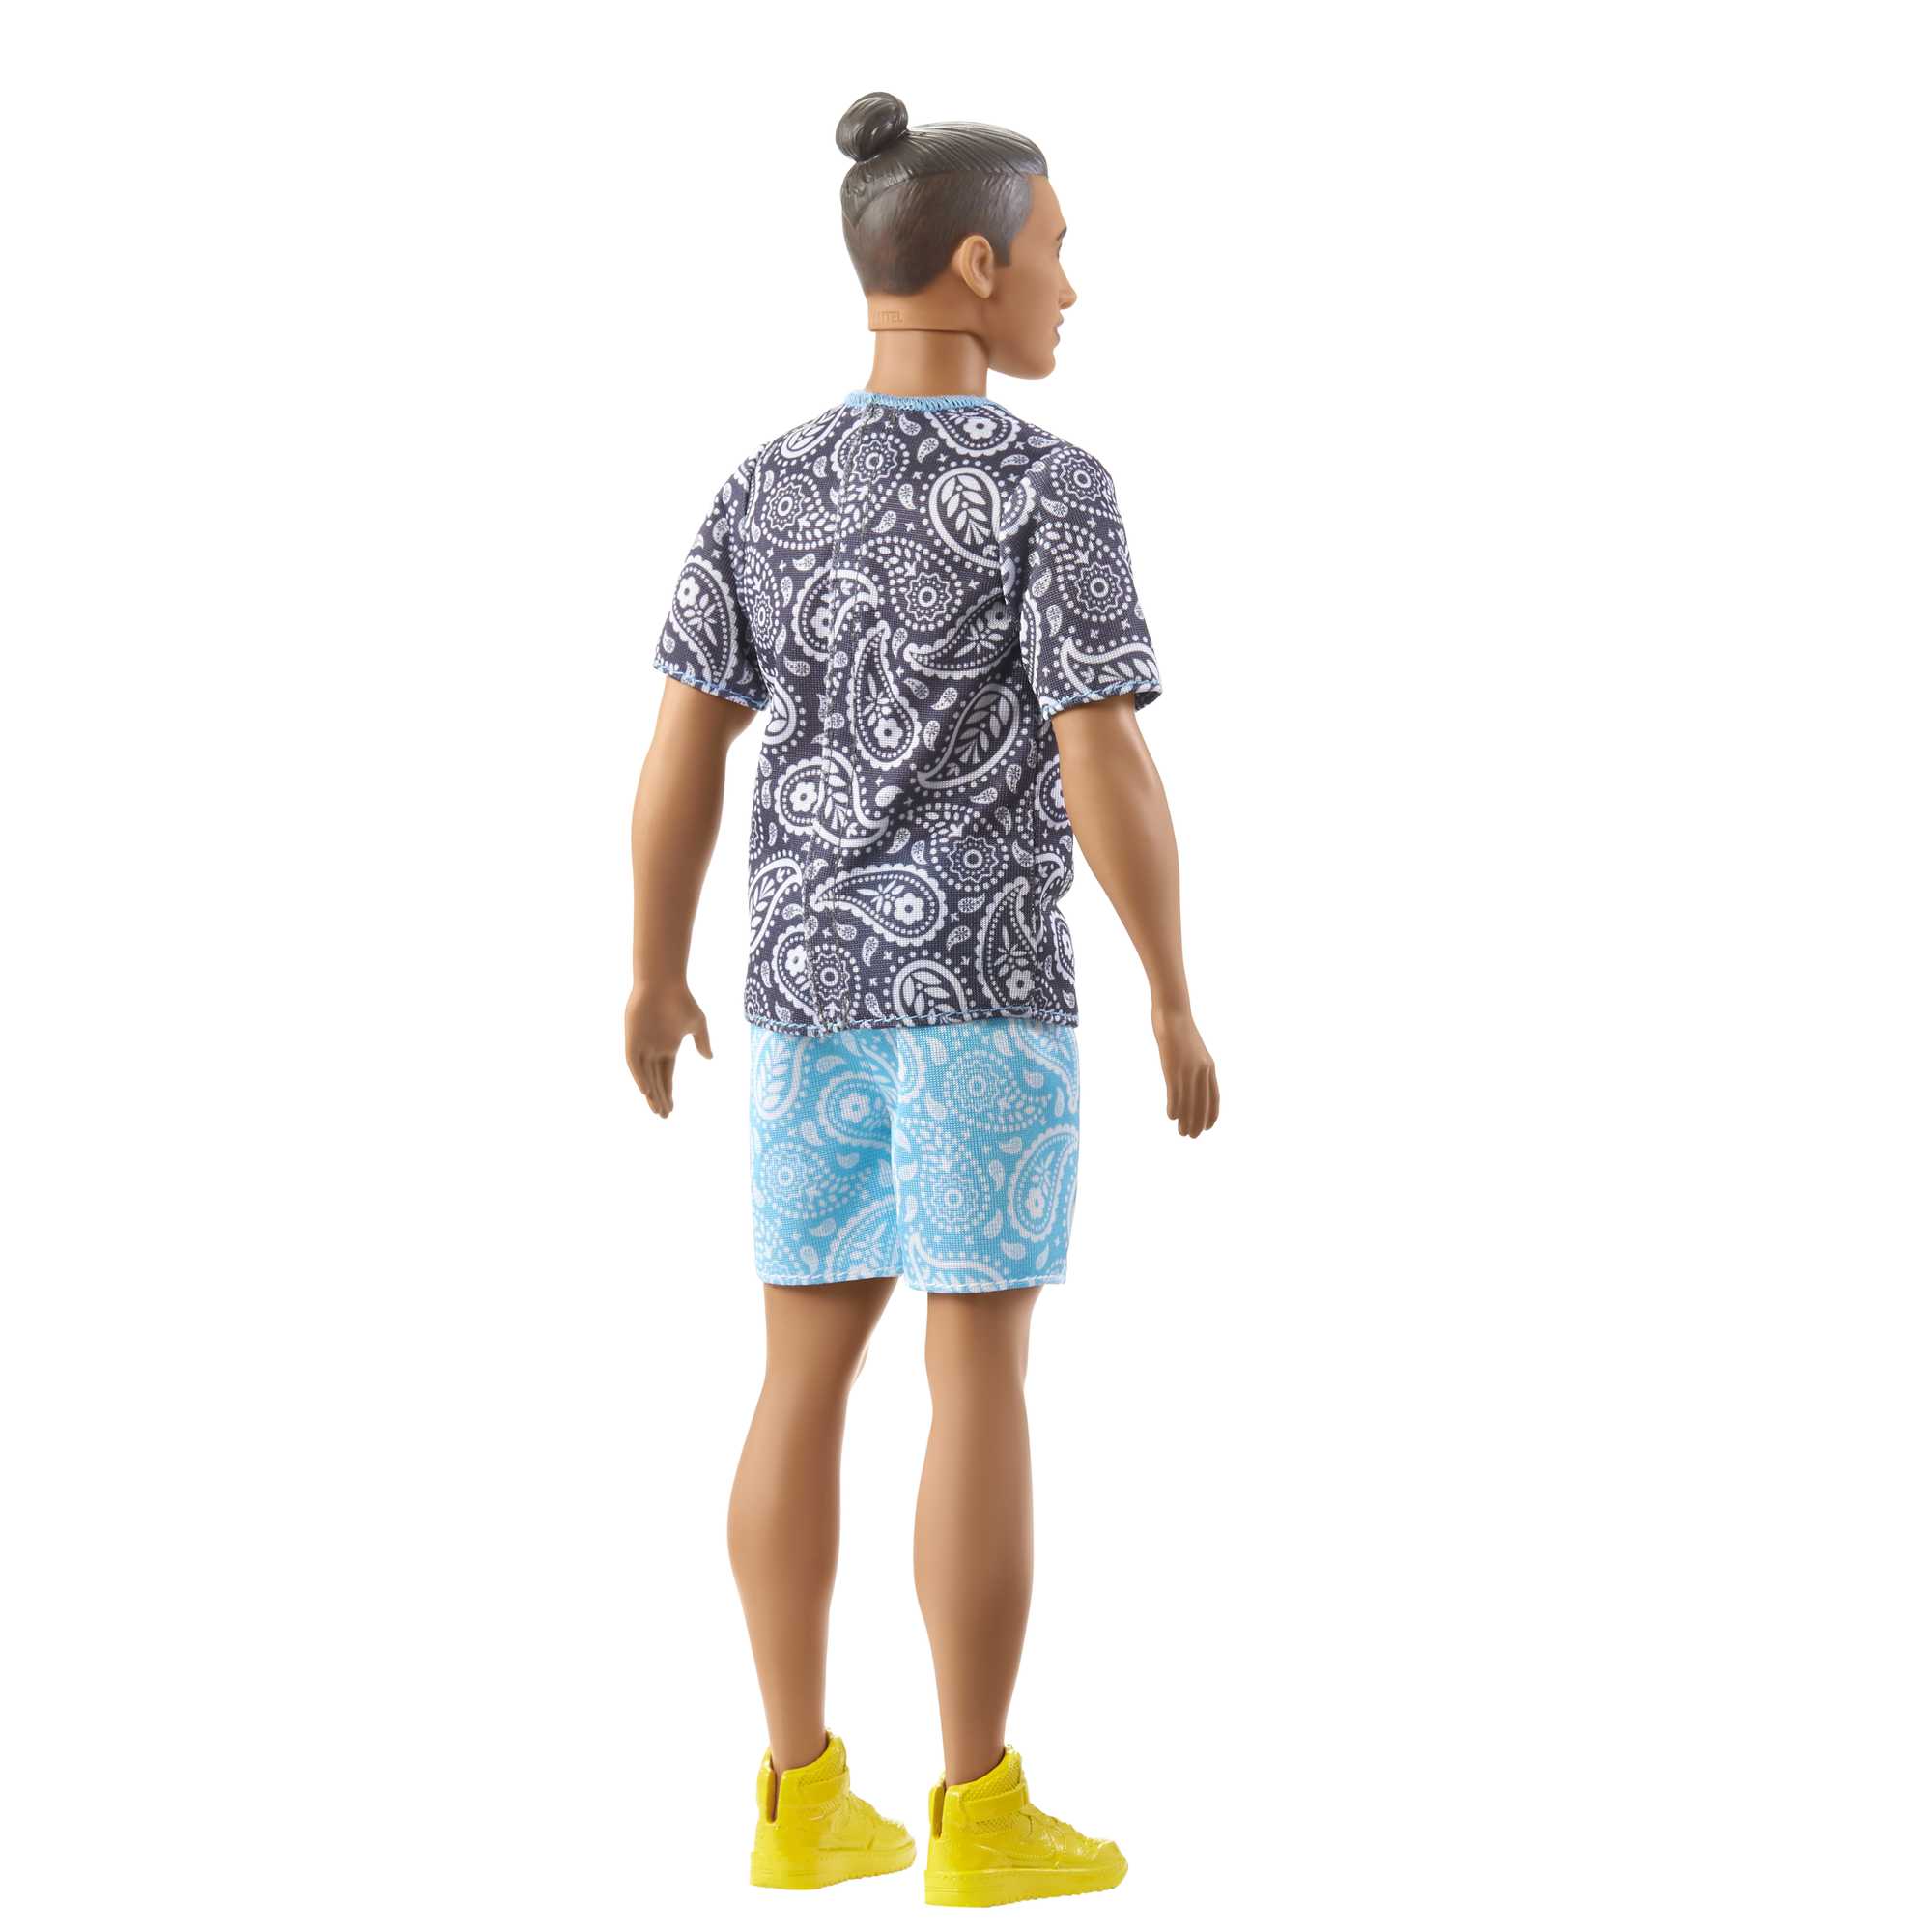 Кукла Кен Barbie Модник в футболке с узором пейсли (HJT09) - фото 2